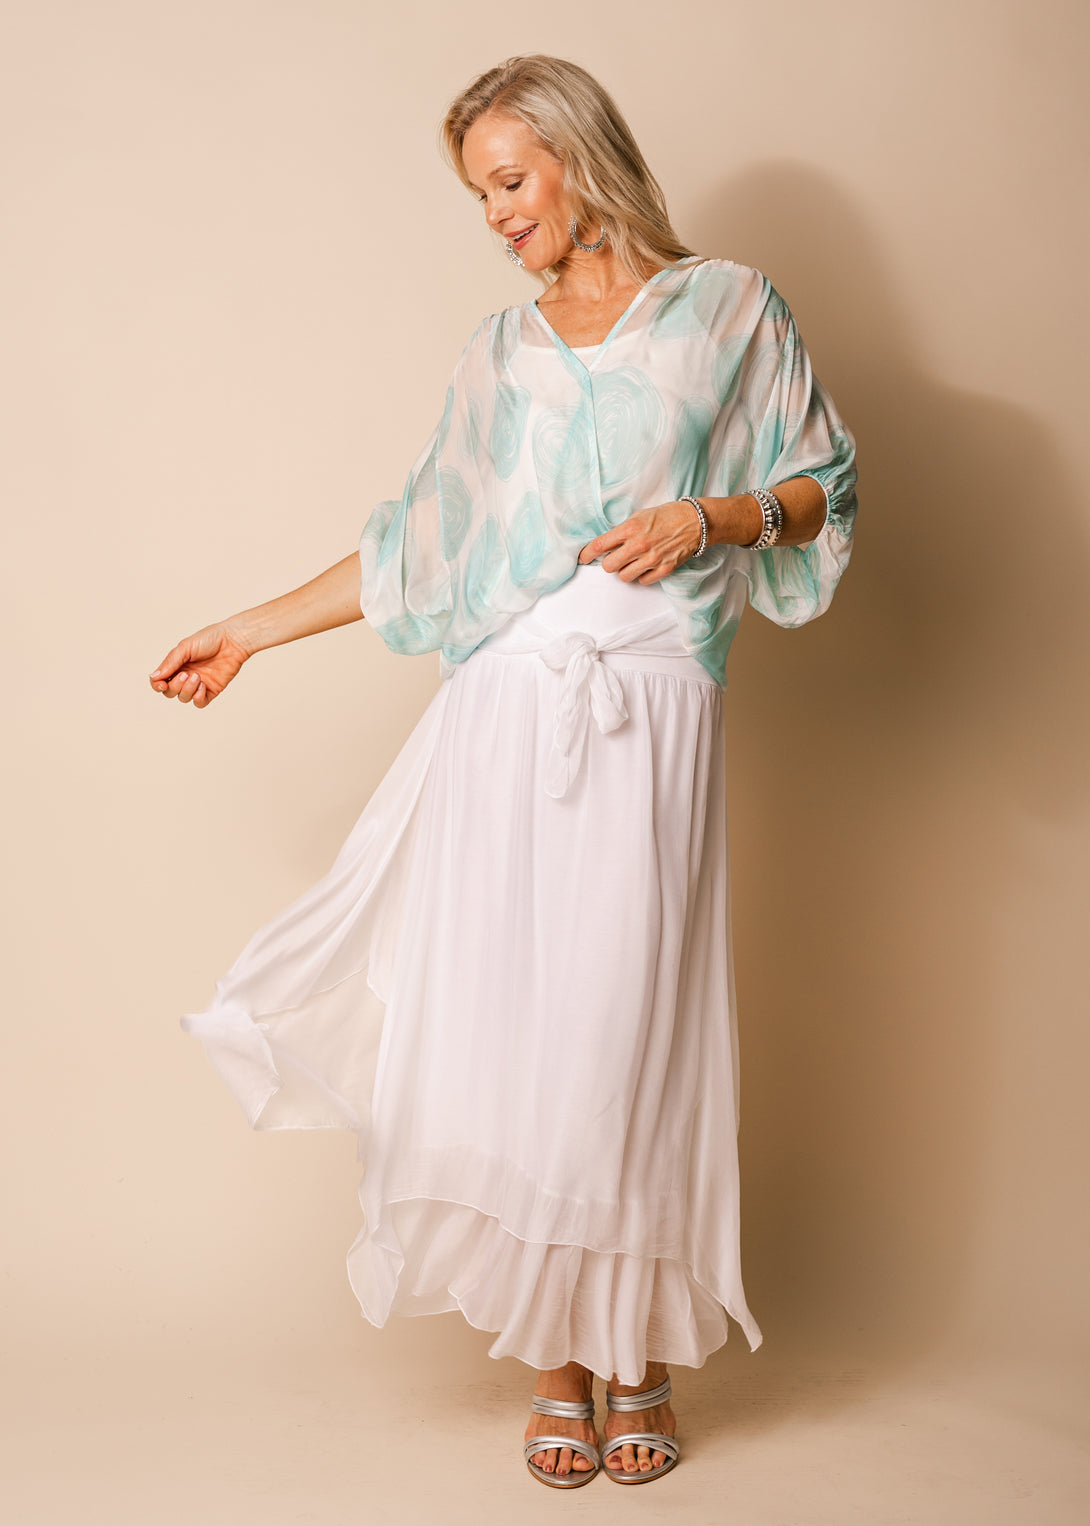 Nala Silk Skirt in White - Imagine Fashion